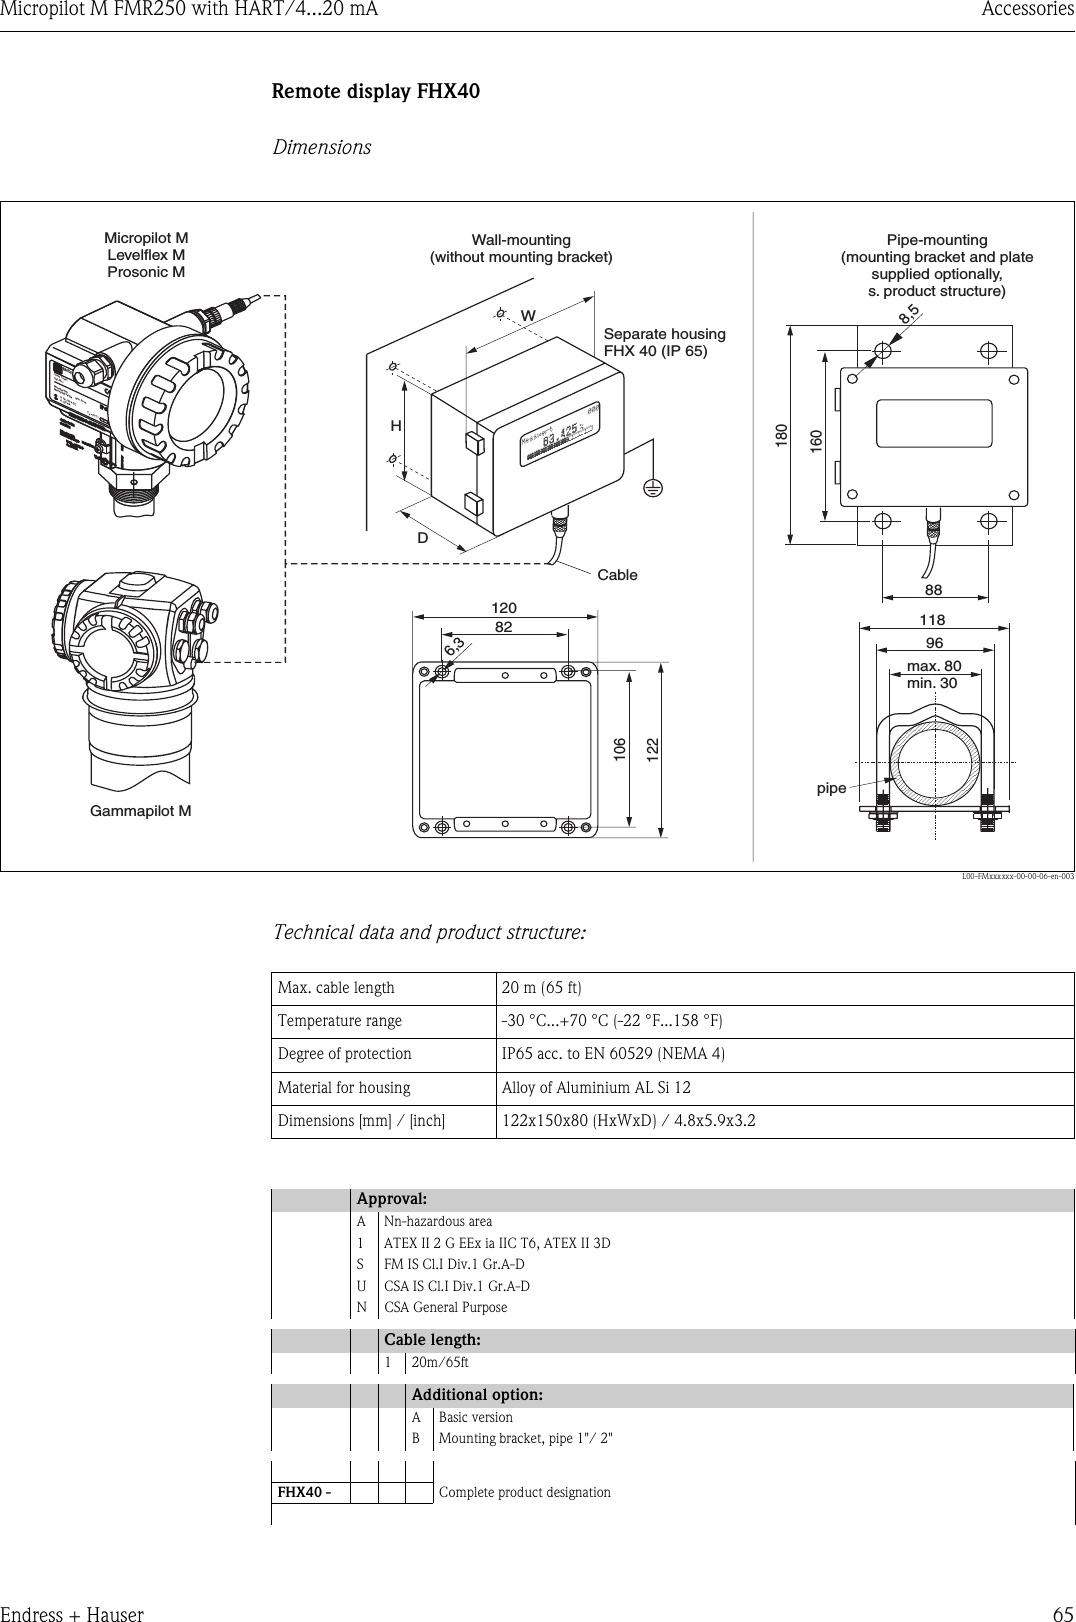 endress hauser level transmitter manual pdf